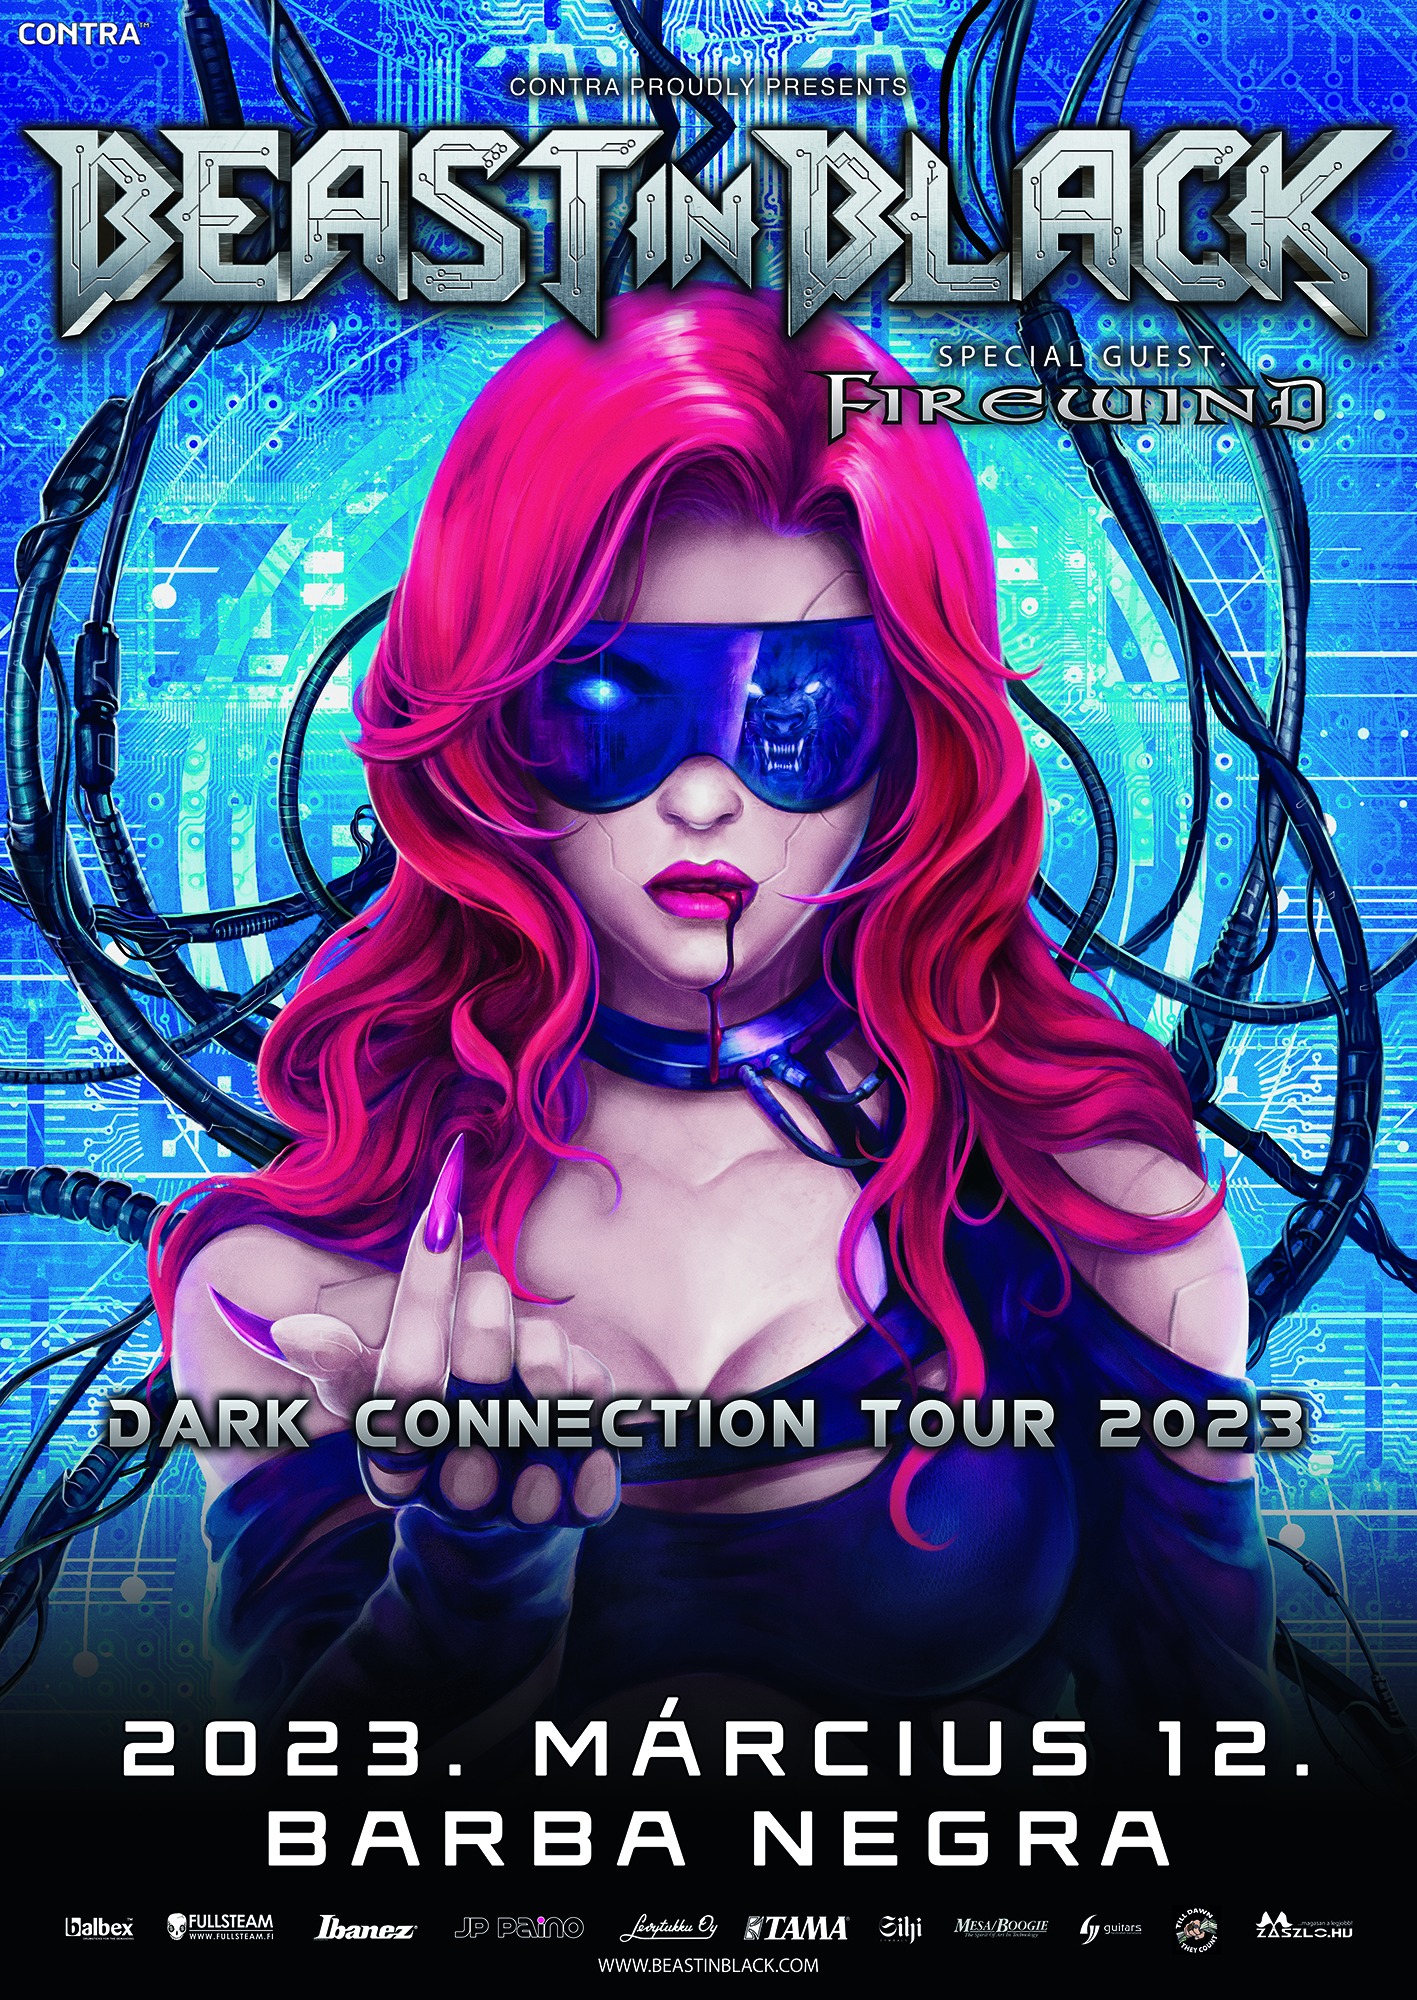 Dark Connection Tour 2023